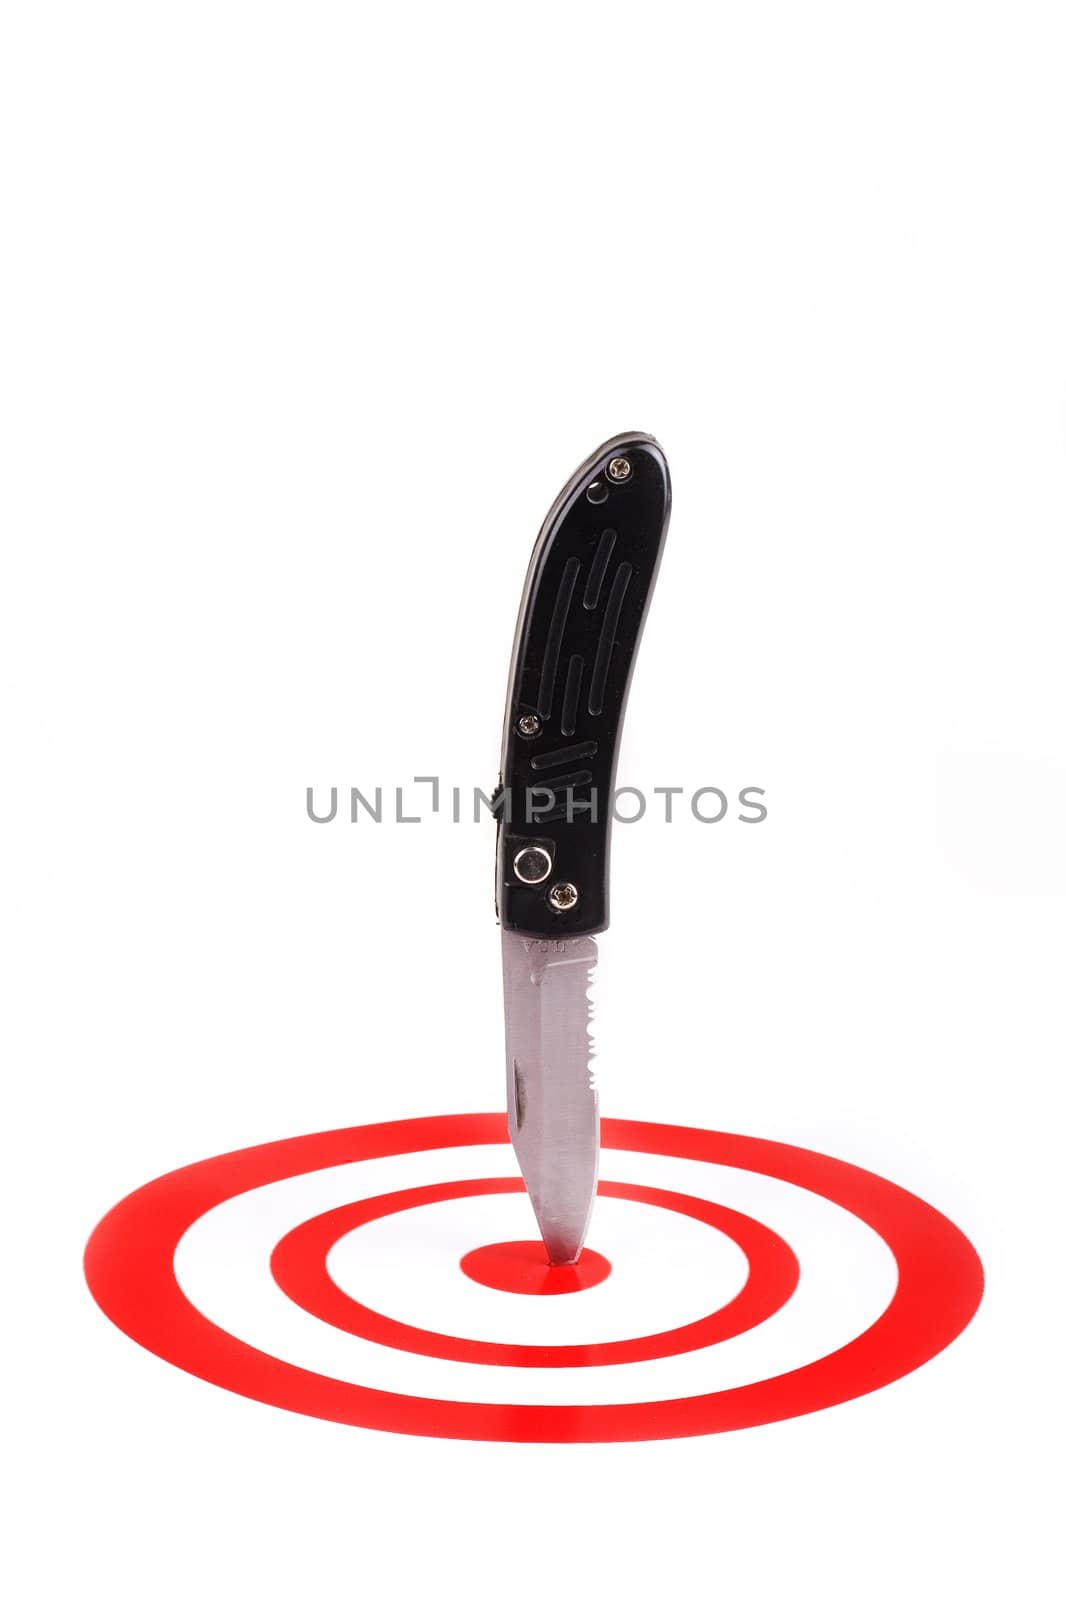 Pocket knife in red bullseye